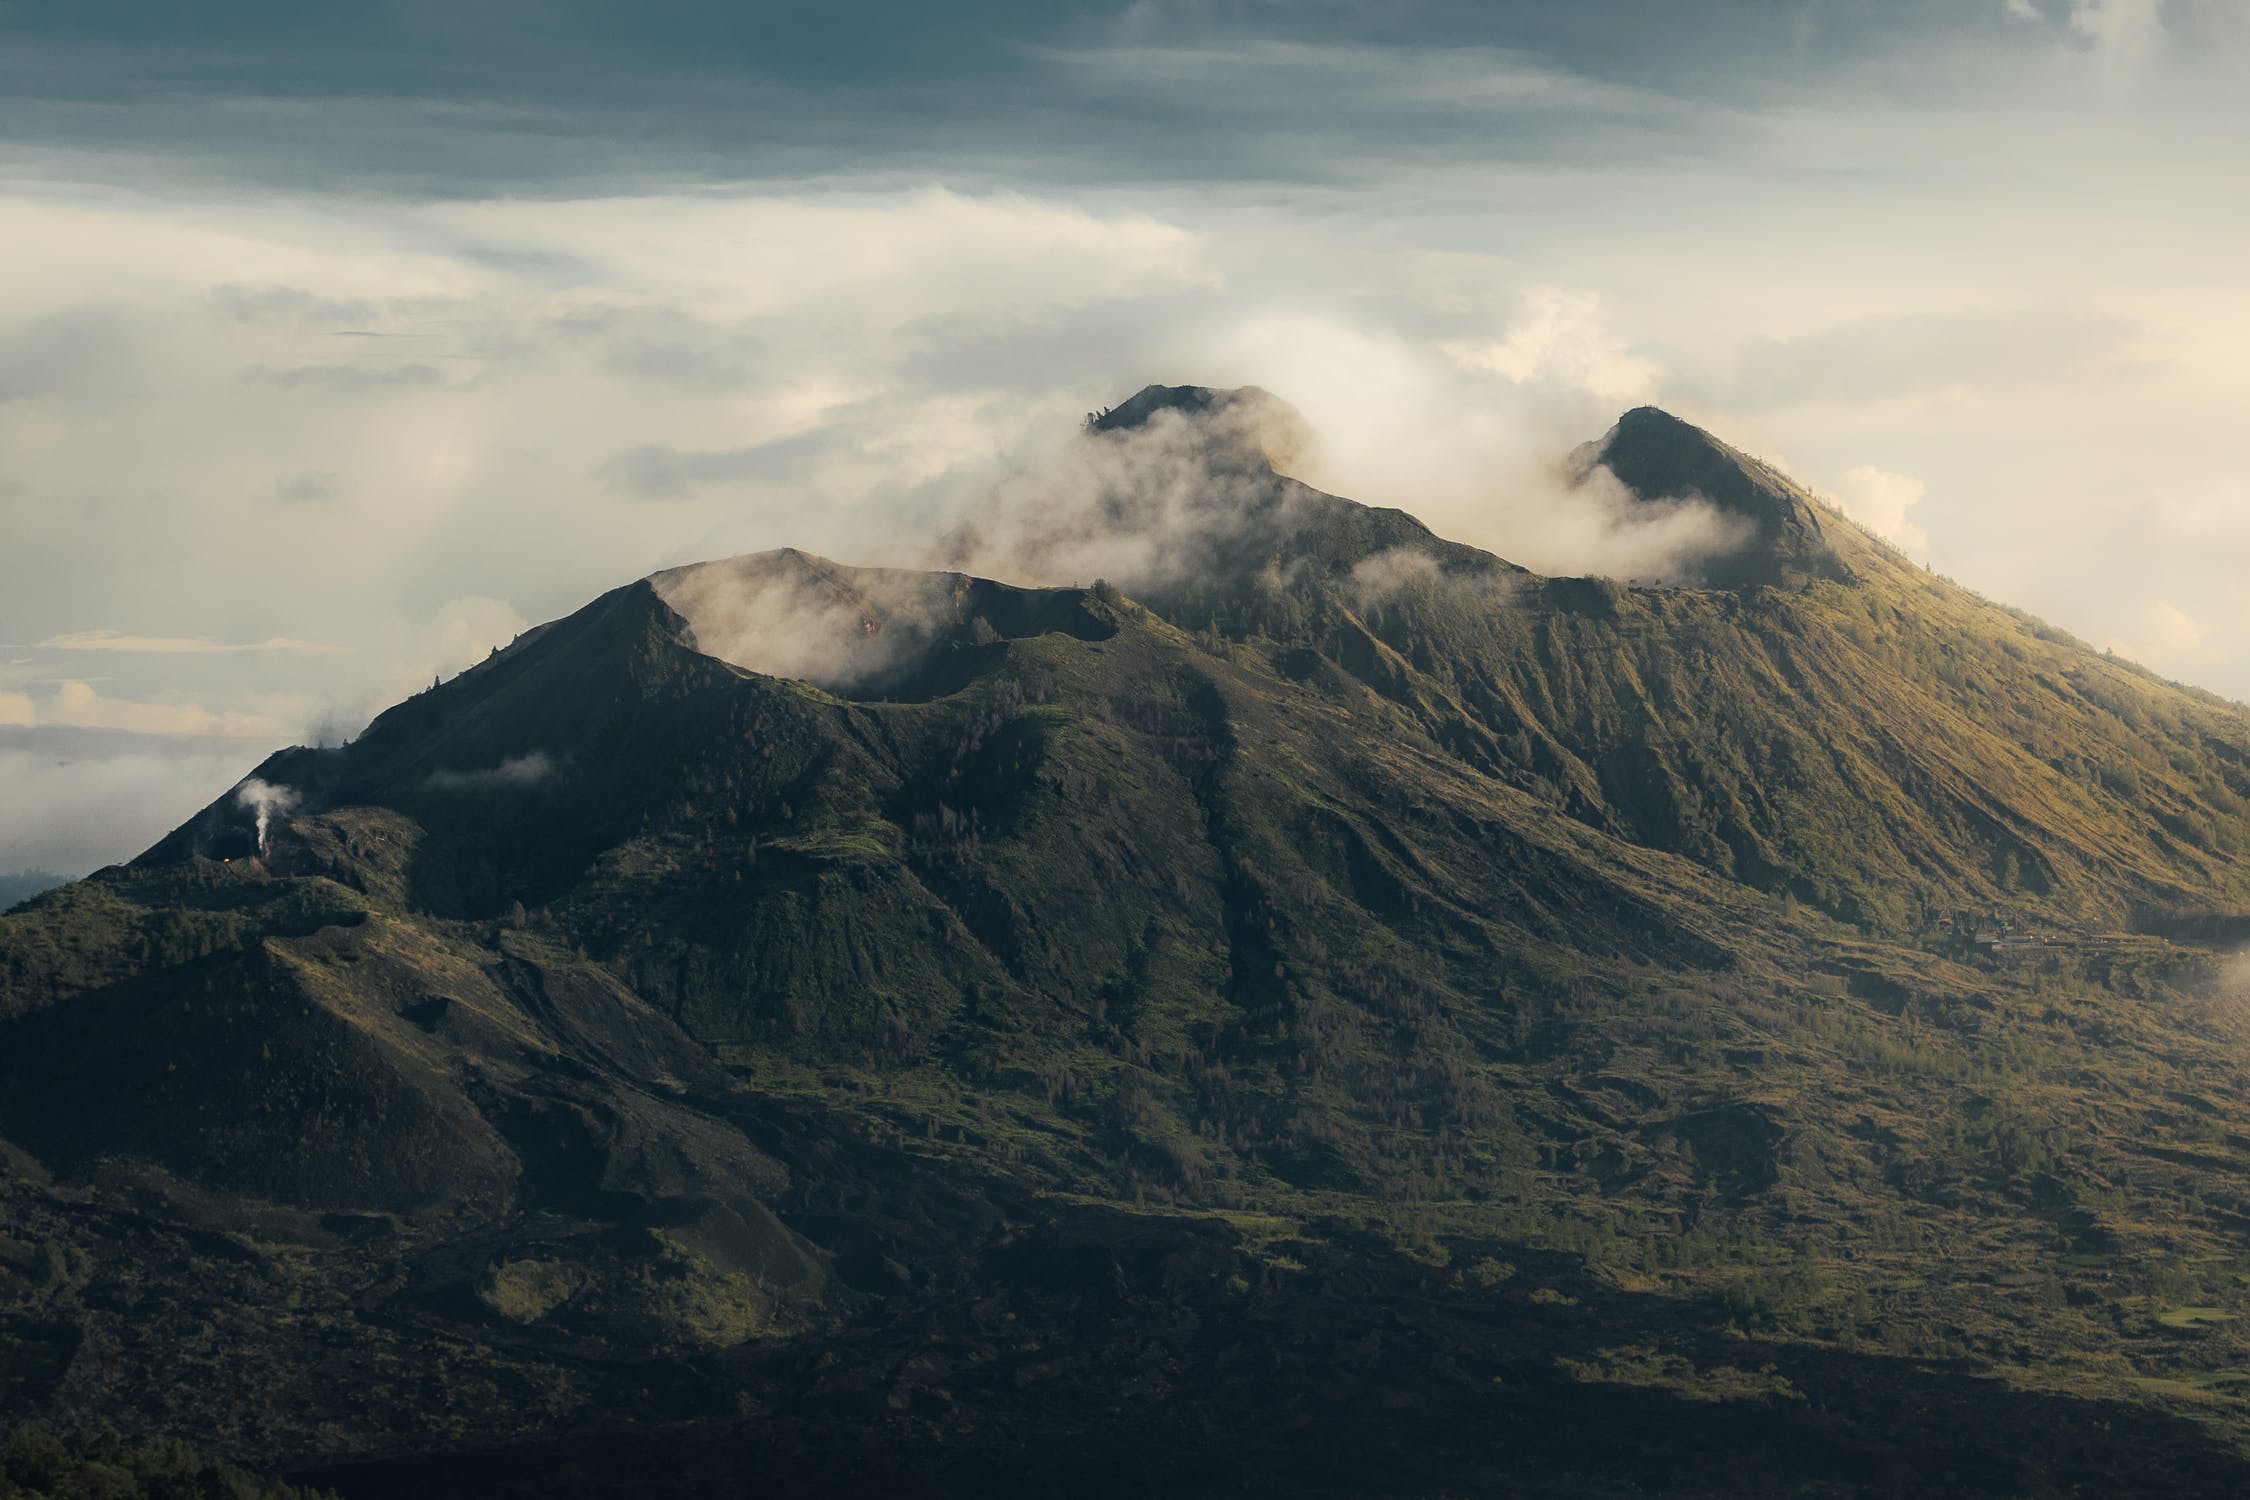 Вулканические горы